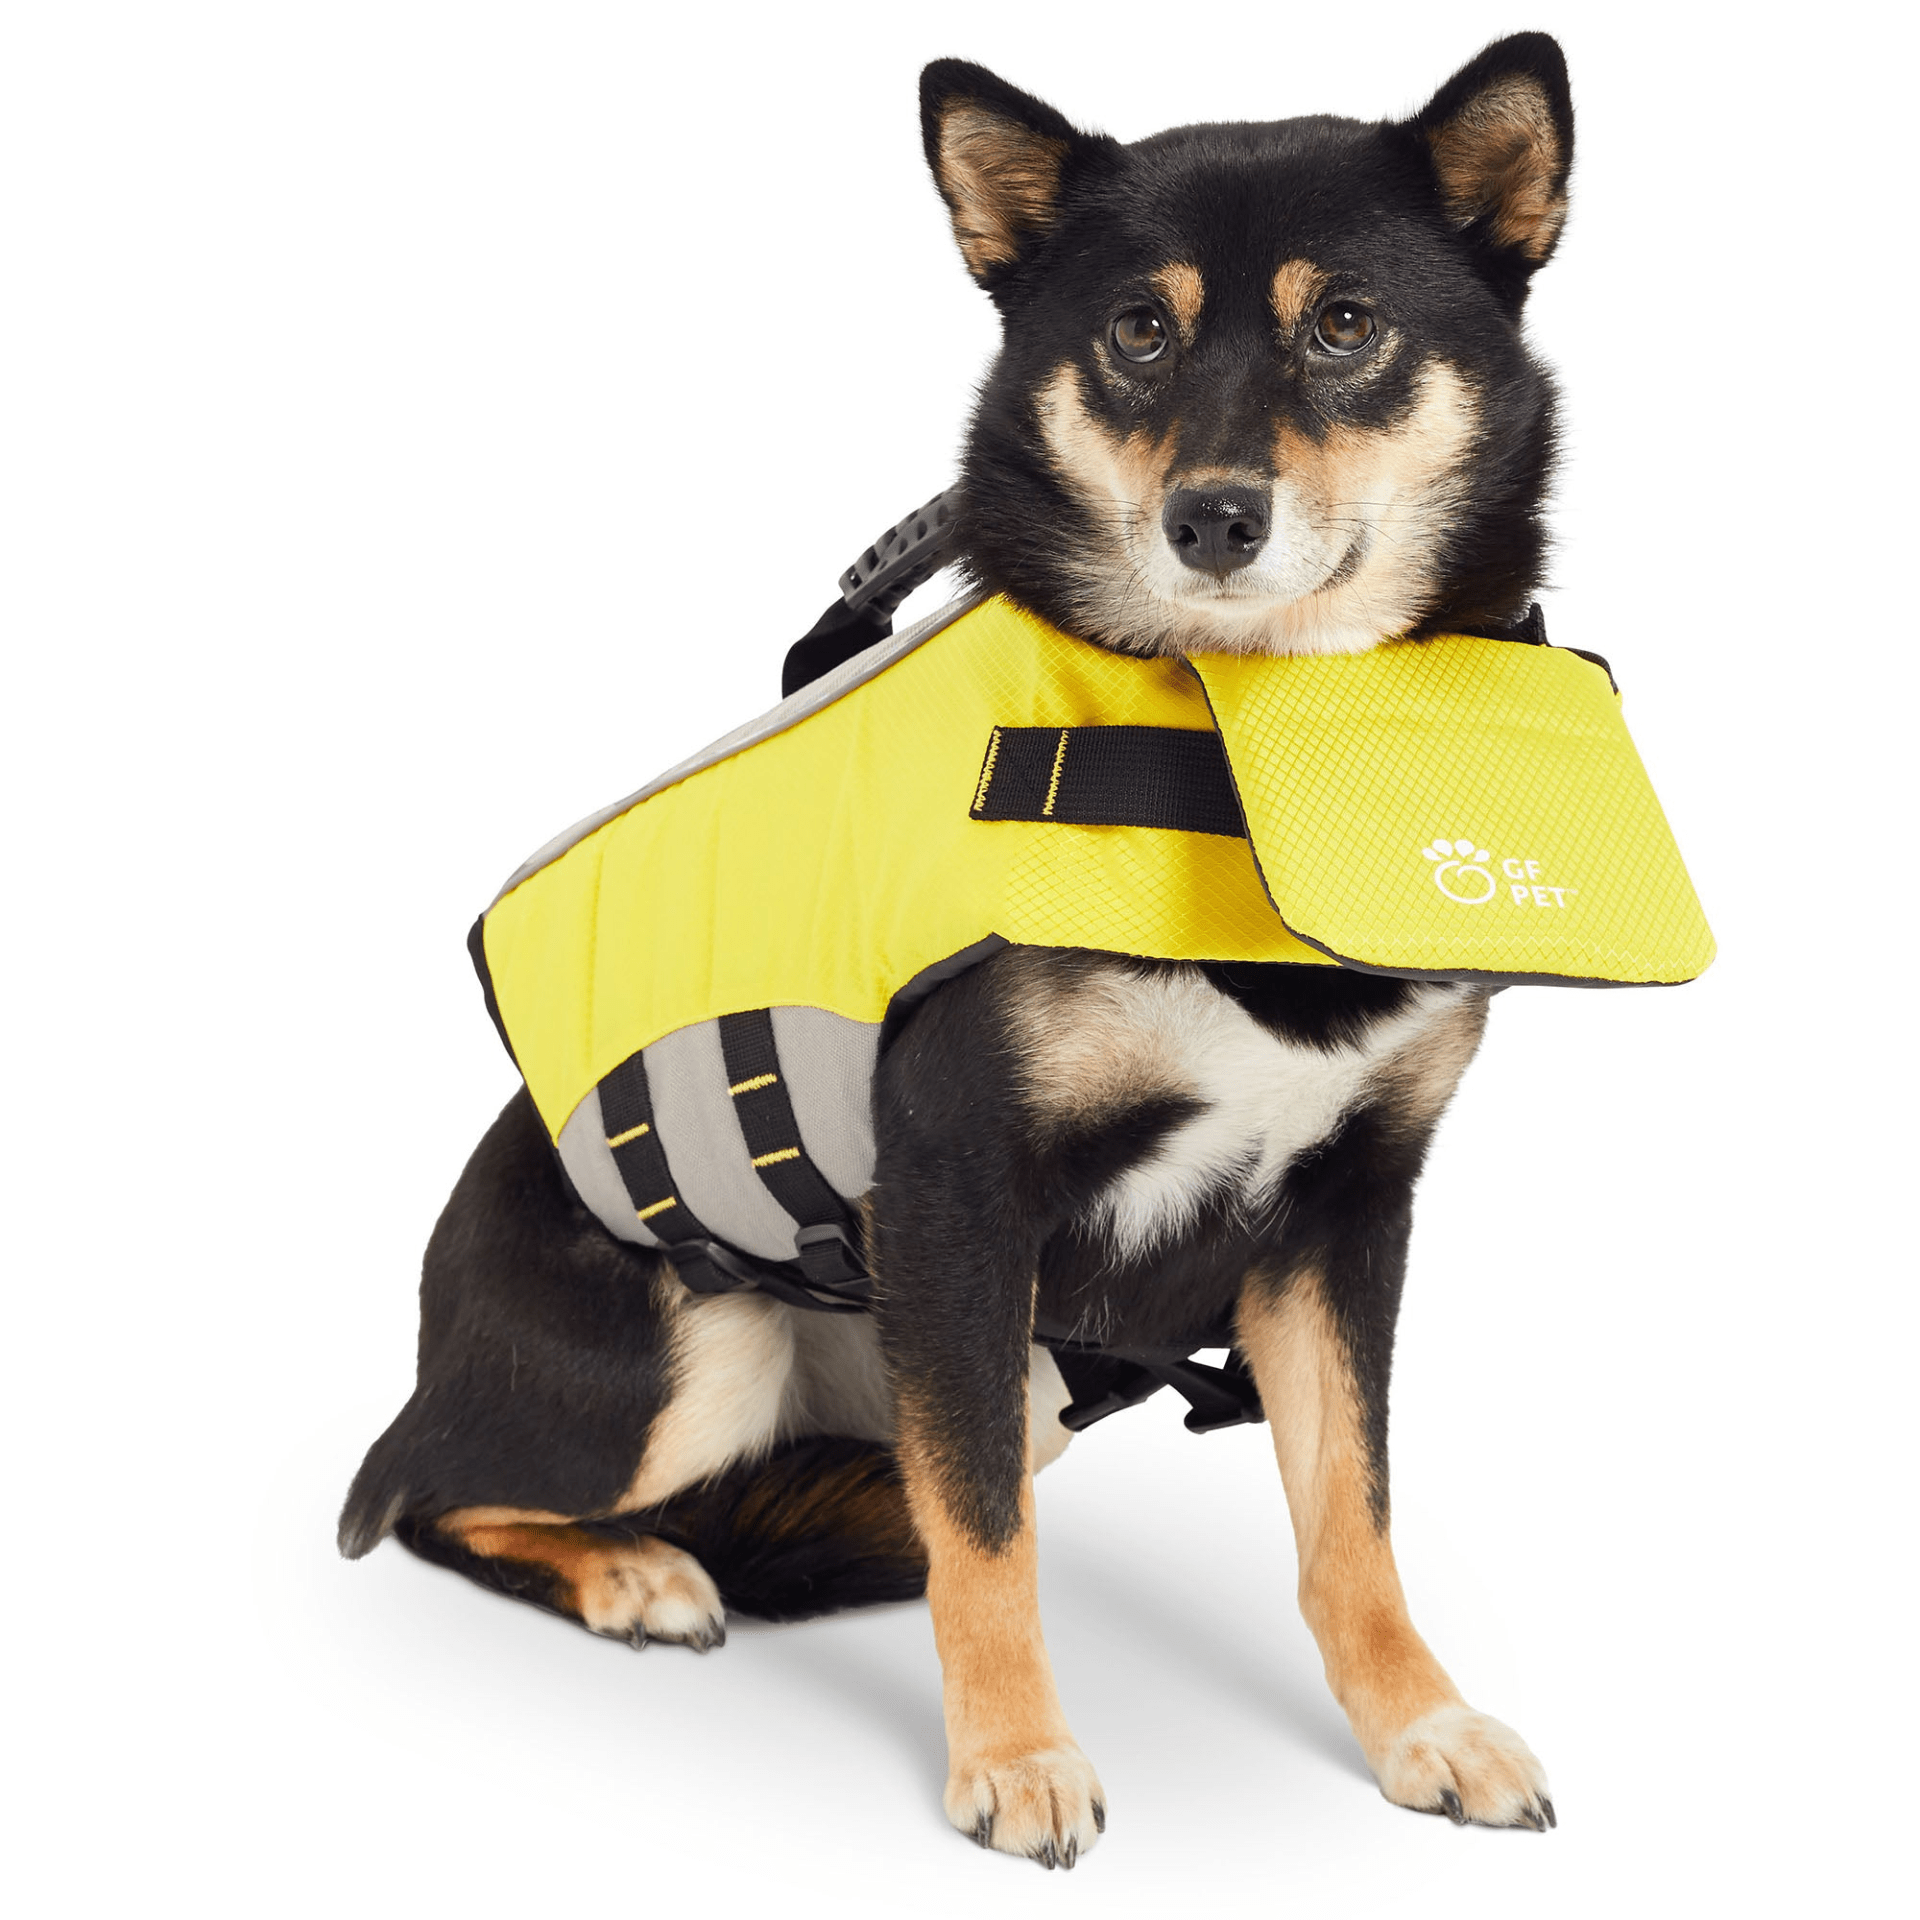 Dog and Pet Stuff Life Vest - Dog Life Jacket